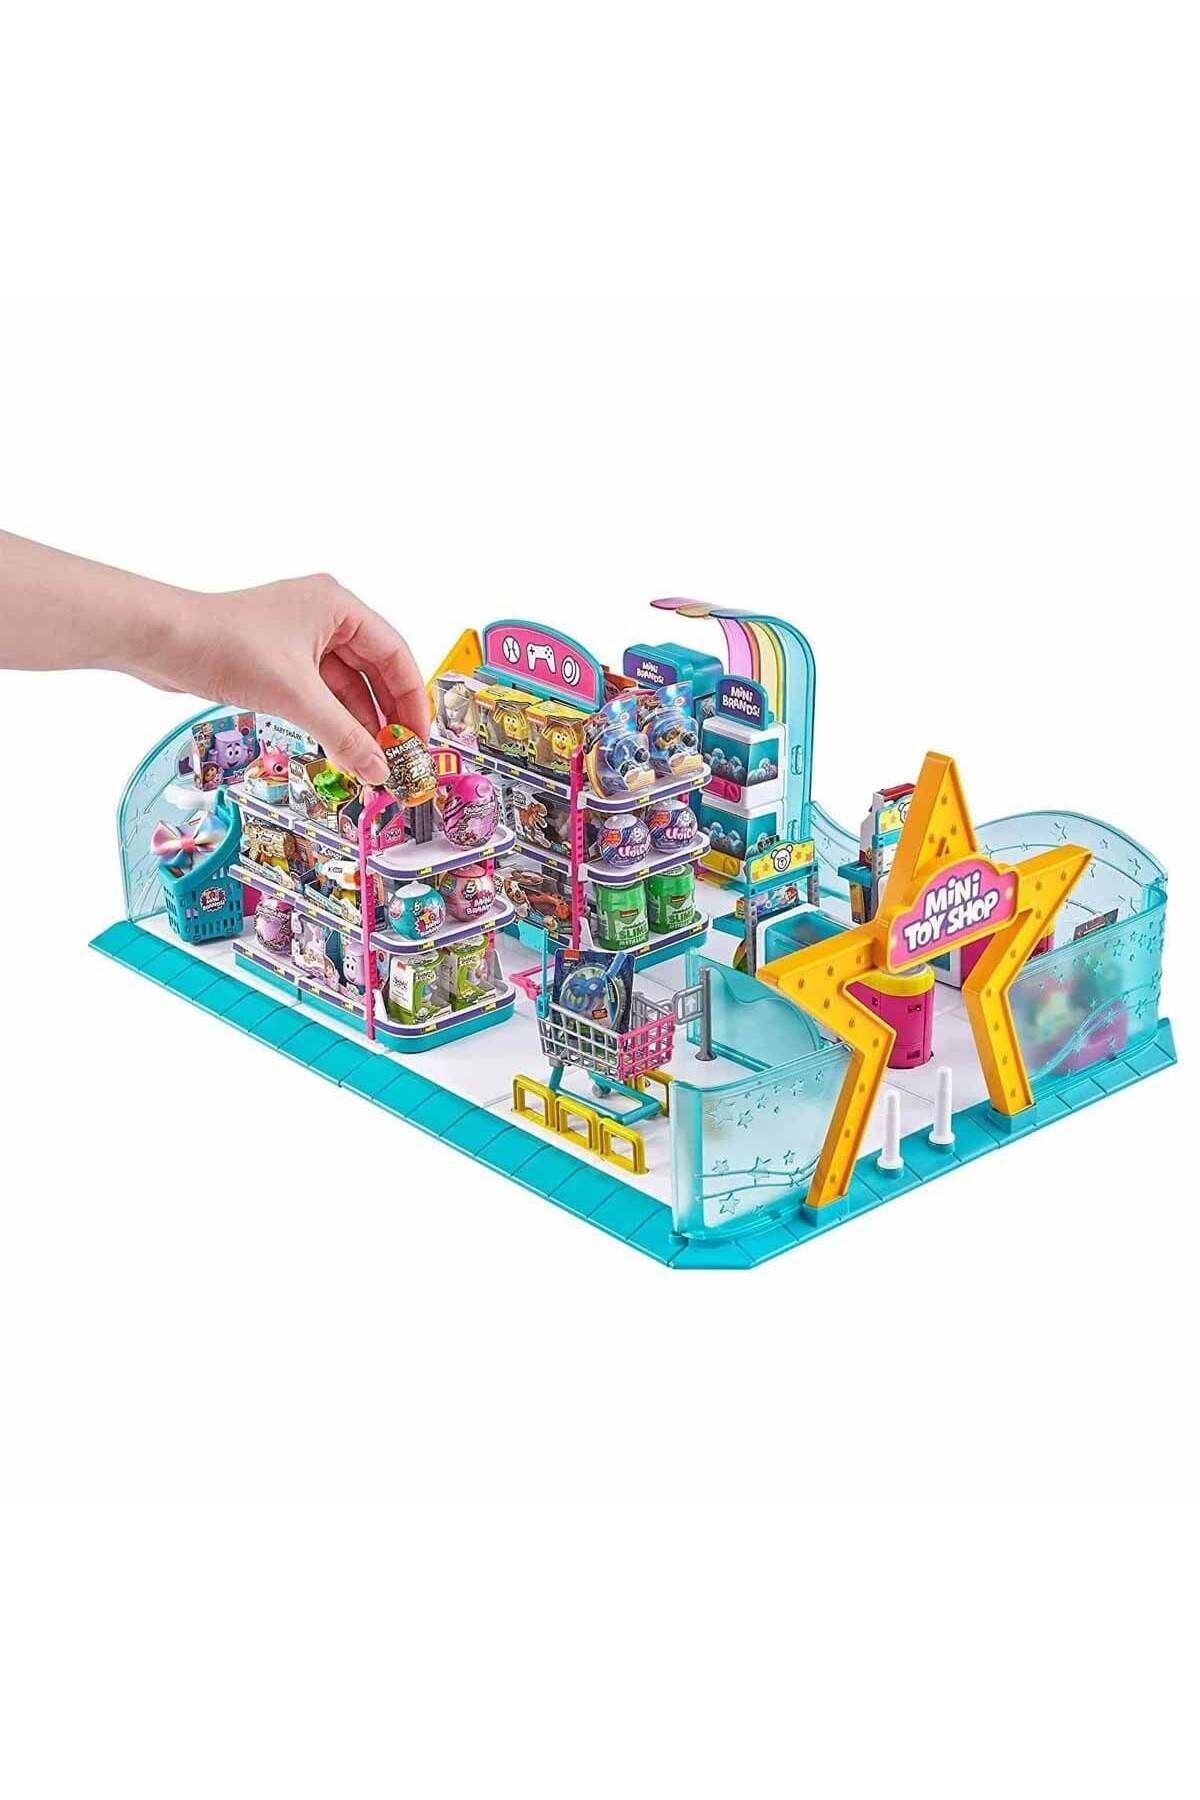 GIOCHI PREZIOSI Mini Toys Oyuncak Mağazası 5um01000